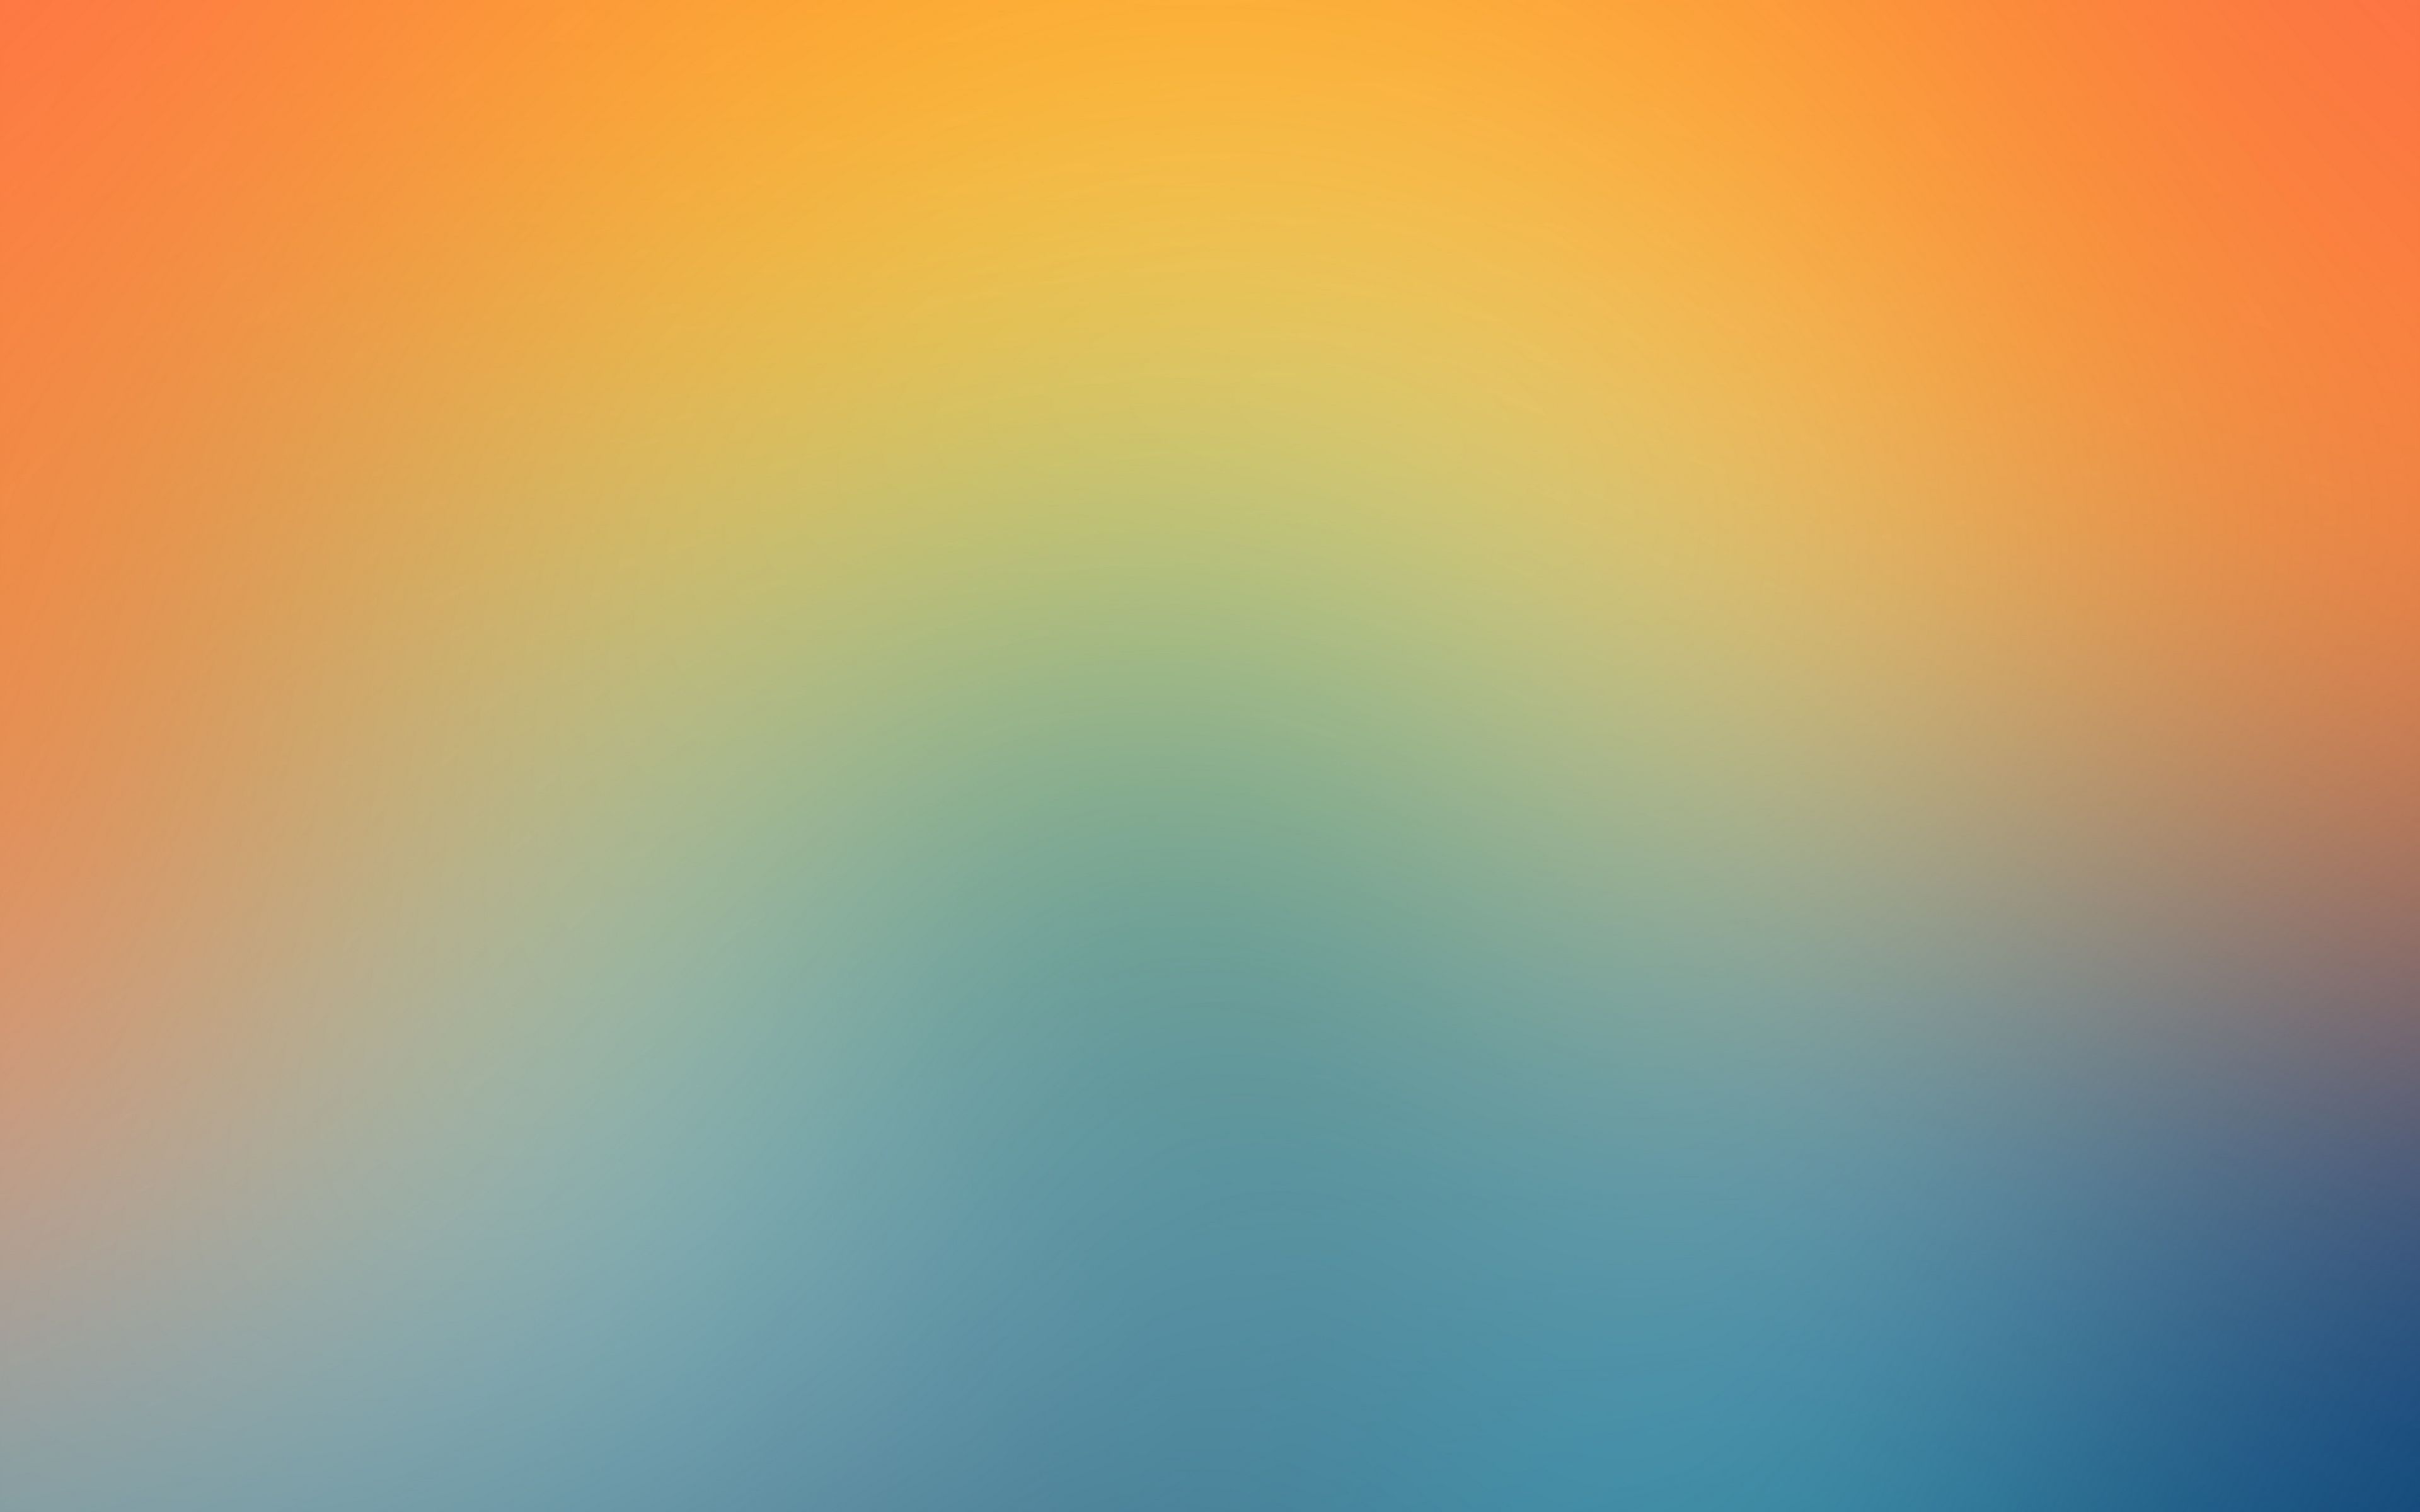 Download wallpaper 3840x2400 gradient, blur, blending, yellow, blue, soft  4k ultra hd 16:10 hd background